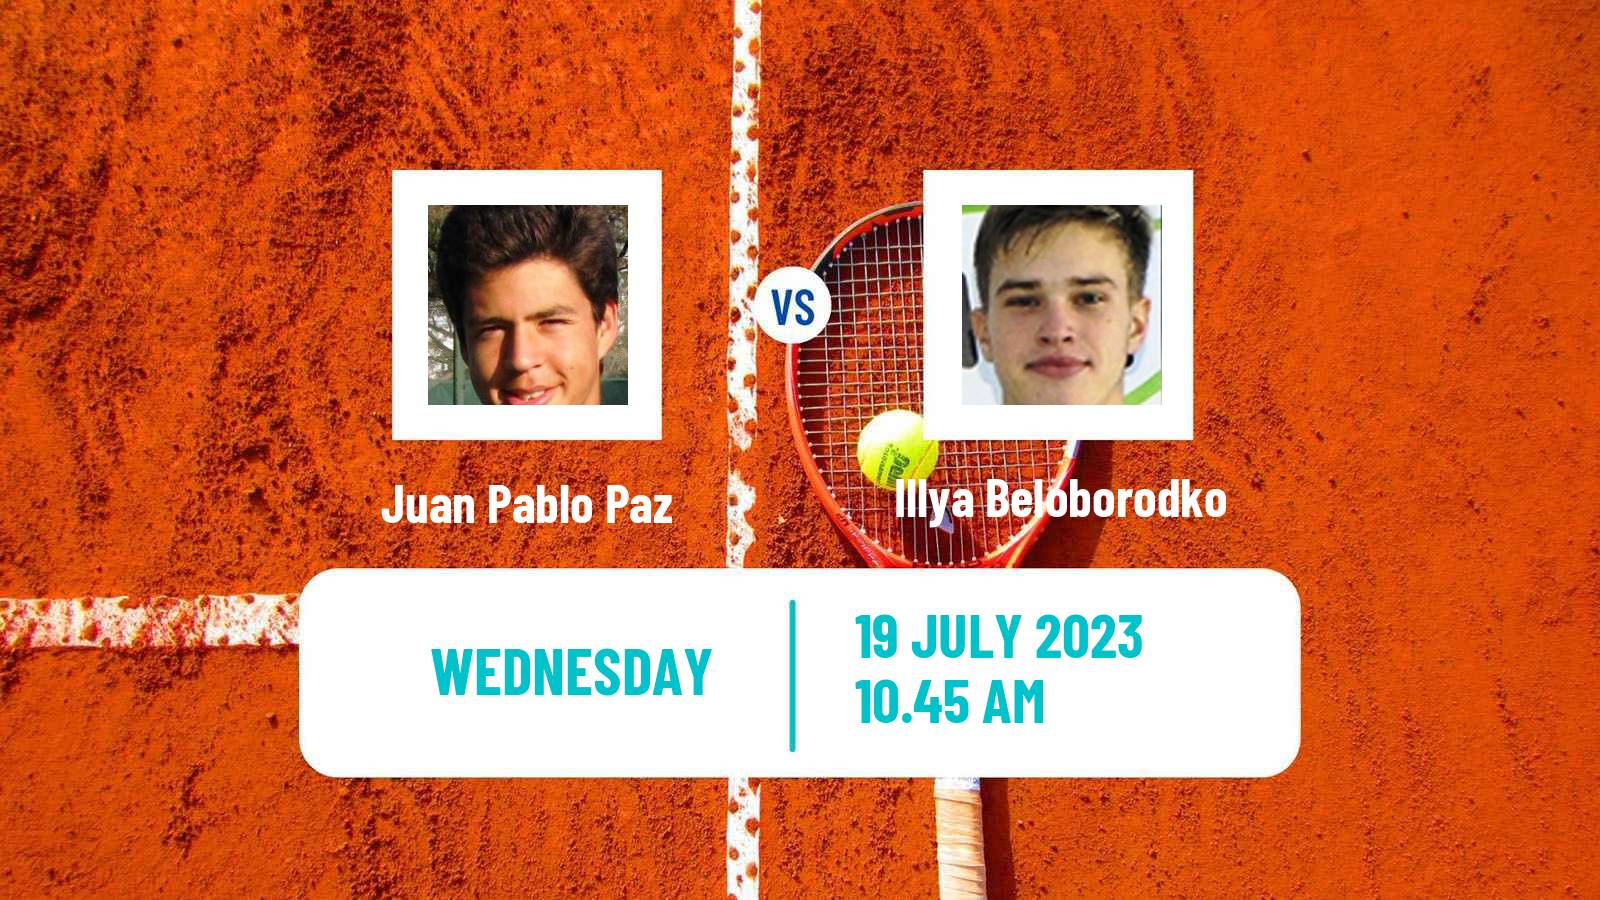 Tennis ITF M15 Uslar Men Juan Pablo Paz - Illya Beloborodko